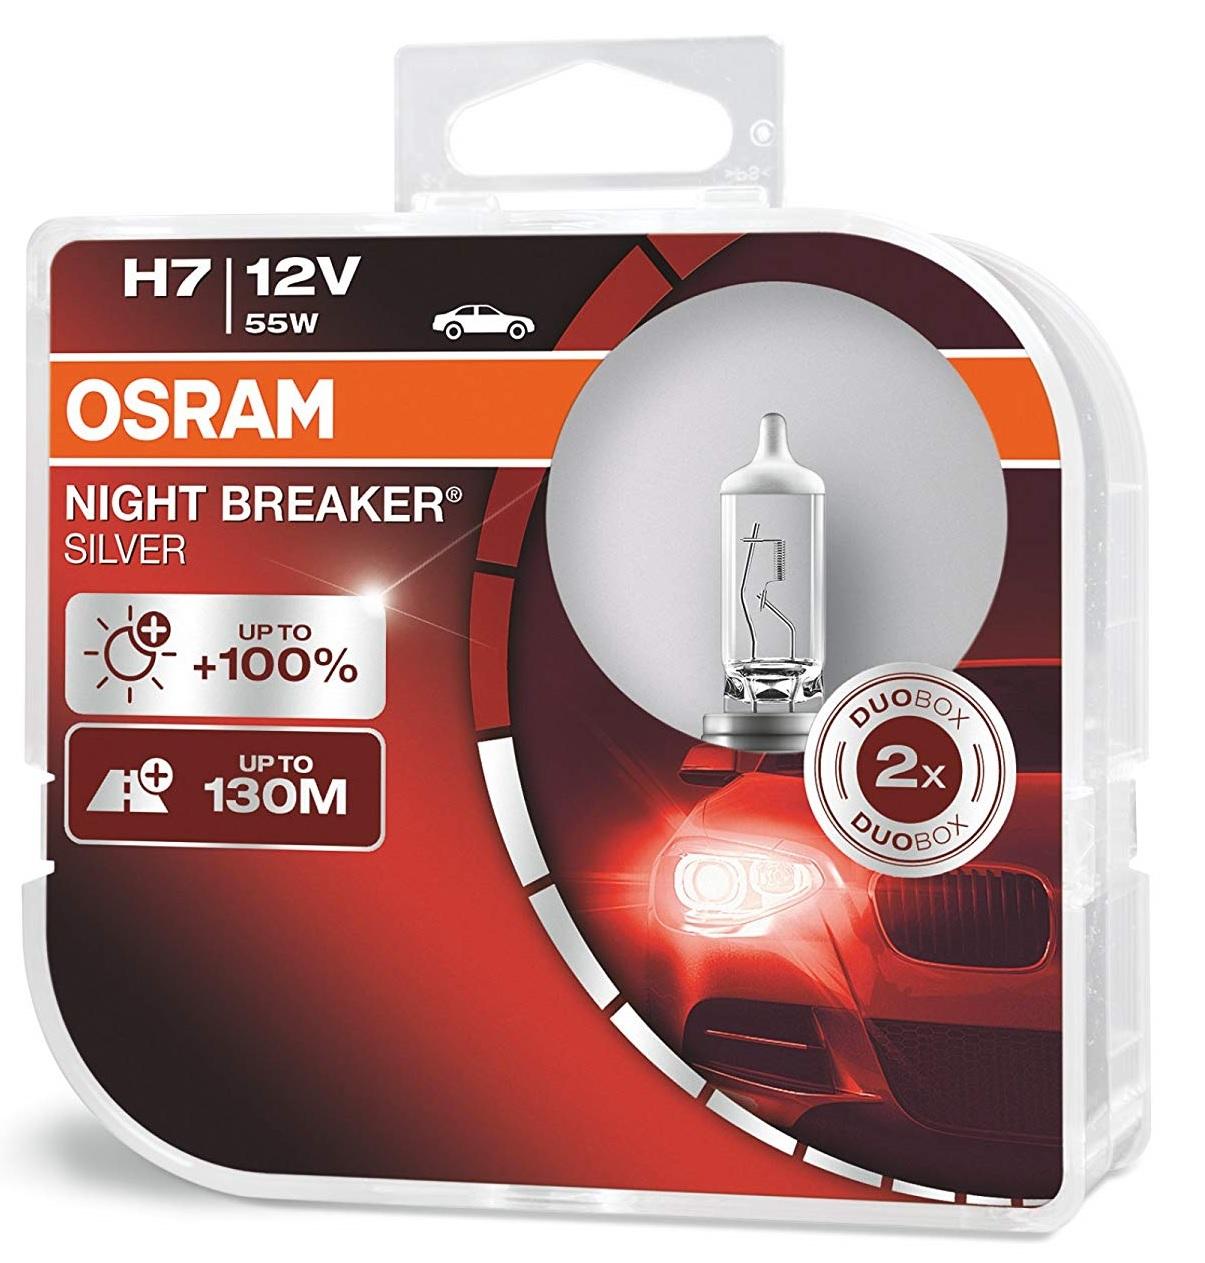 Lampade OSRAM H7 NIGHT BREAKER® SILVER Duo Box +100%